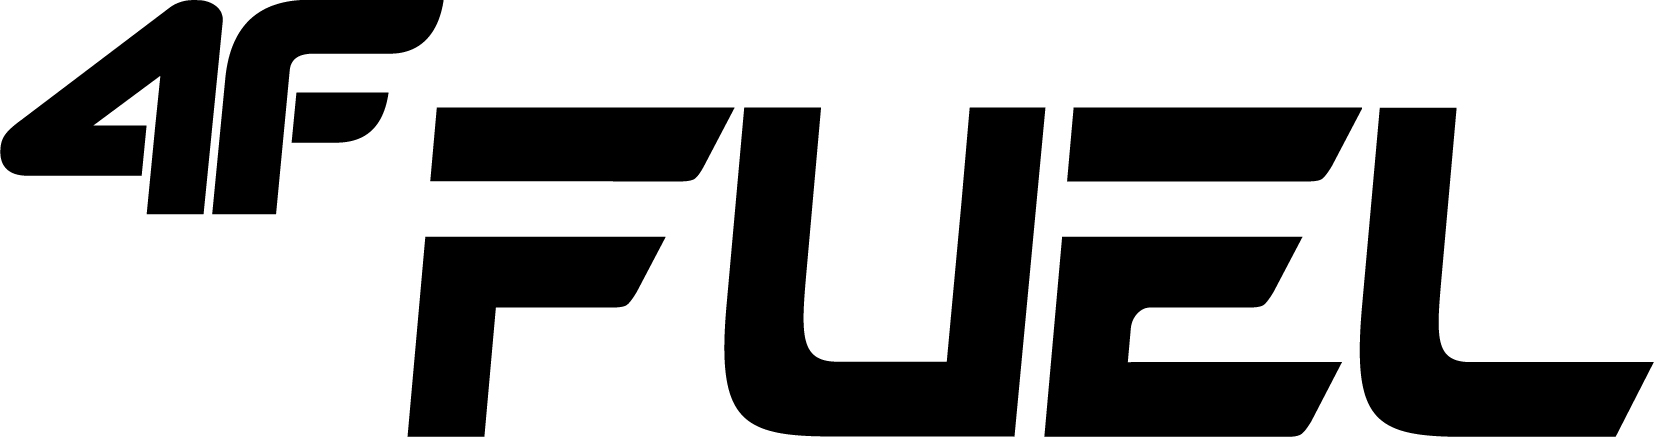 4ffuel-logo-1.jpg